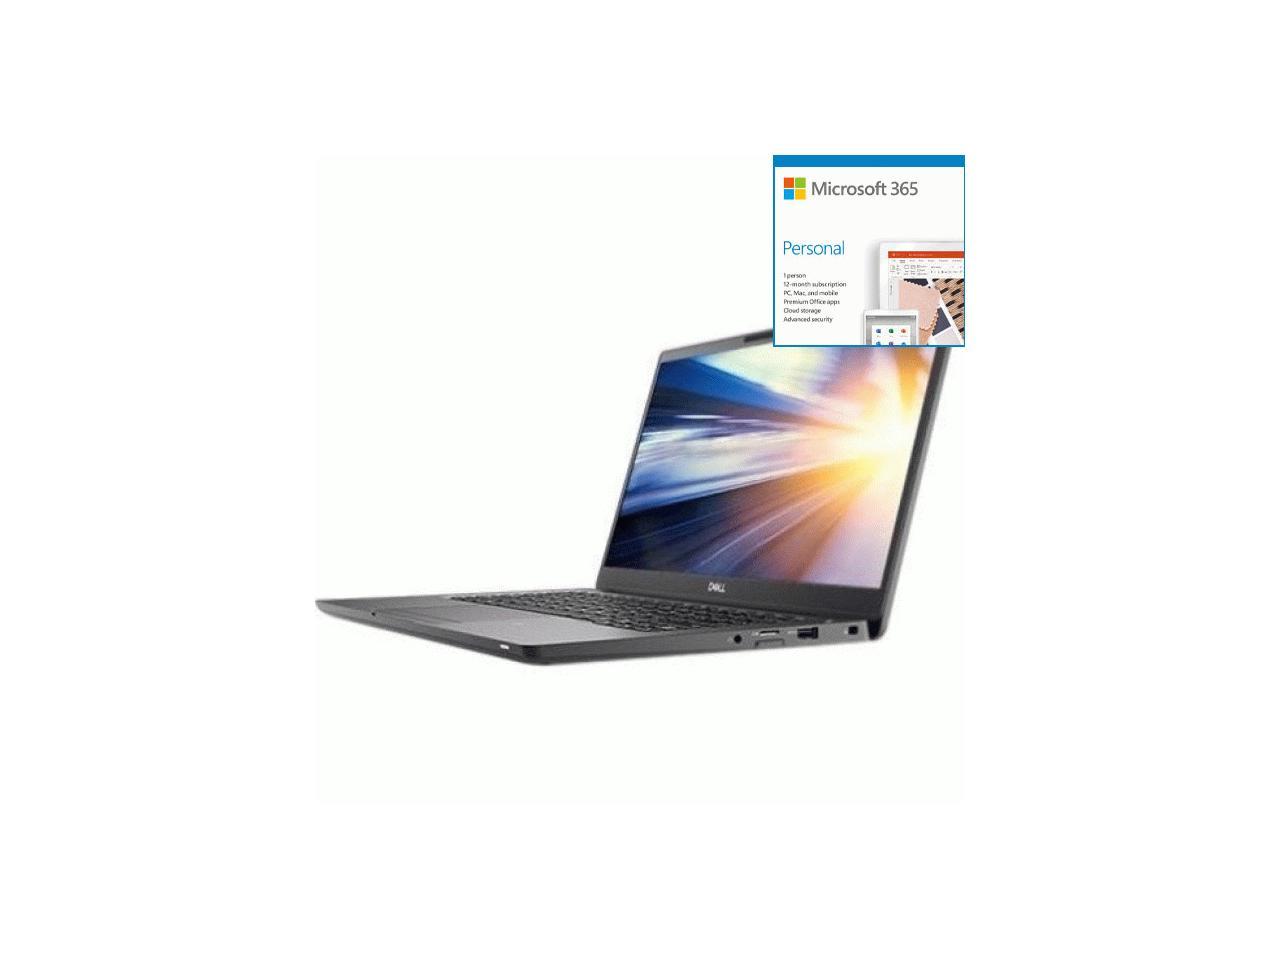 Dell Latitude 7300 13.3" Notebook - 1920 x 1080 - Core i7 i7 + Microsoft 365 Bundle